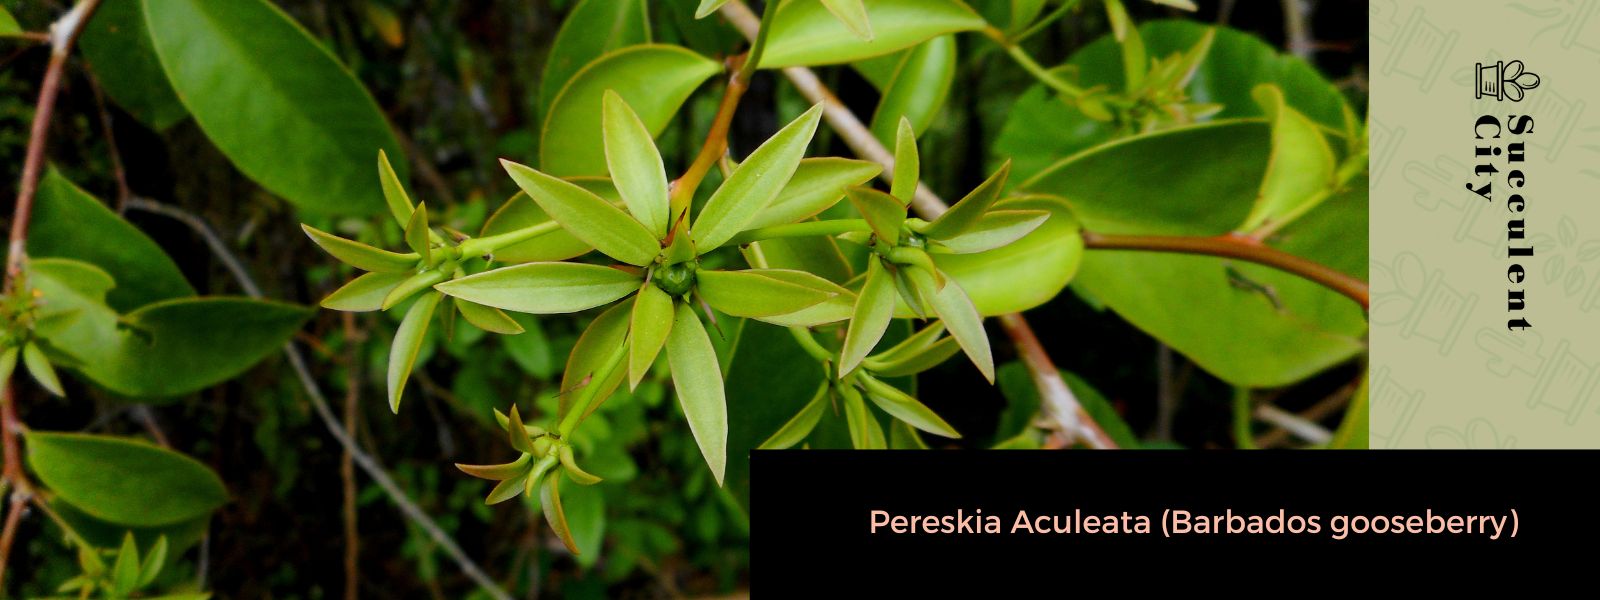 Pereskia Aculeata (grosella espinosa de Barbados)